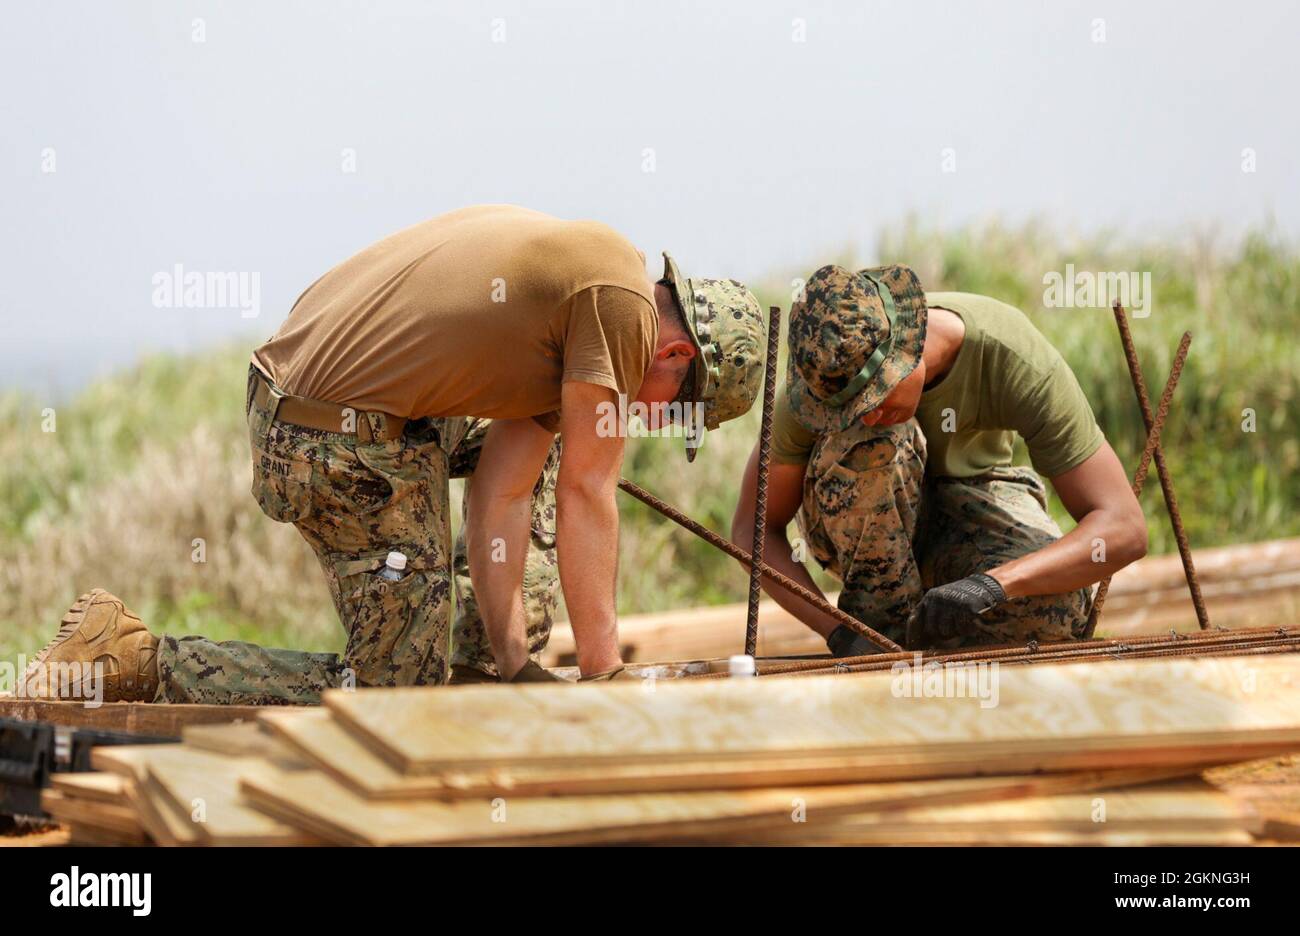 060521-N- RU672-1058 Okinawa, Giappone (5 giugno 2021) costruttore Constructionman James Grant (a sinistra), assegnato a Naval Mobile Construction Battaglione (NMCB) 4, e US Marine Corps CPL. Jason Montalvo (a destra), assegnato al 9° Battaglione di supporto tecnico (ESB), costruisce un telaio di armatura per un sito di costruzione di bunker in calcestruzzo, in una base avanzata di spedizione simulata sul complesso 174 del campo di addestramento di Okinawa, un'isola disabitata al largo della costa di Okinawa, Giappone, come parte dell'esercizio congiunto della torre di avvistamento di Poseidone. Il Watchtower di Poseidon è un esercizio multidominio progettato per simulare il sistema di protezione Foto Stock